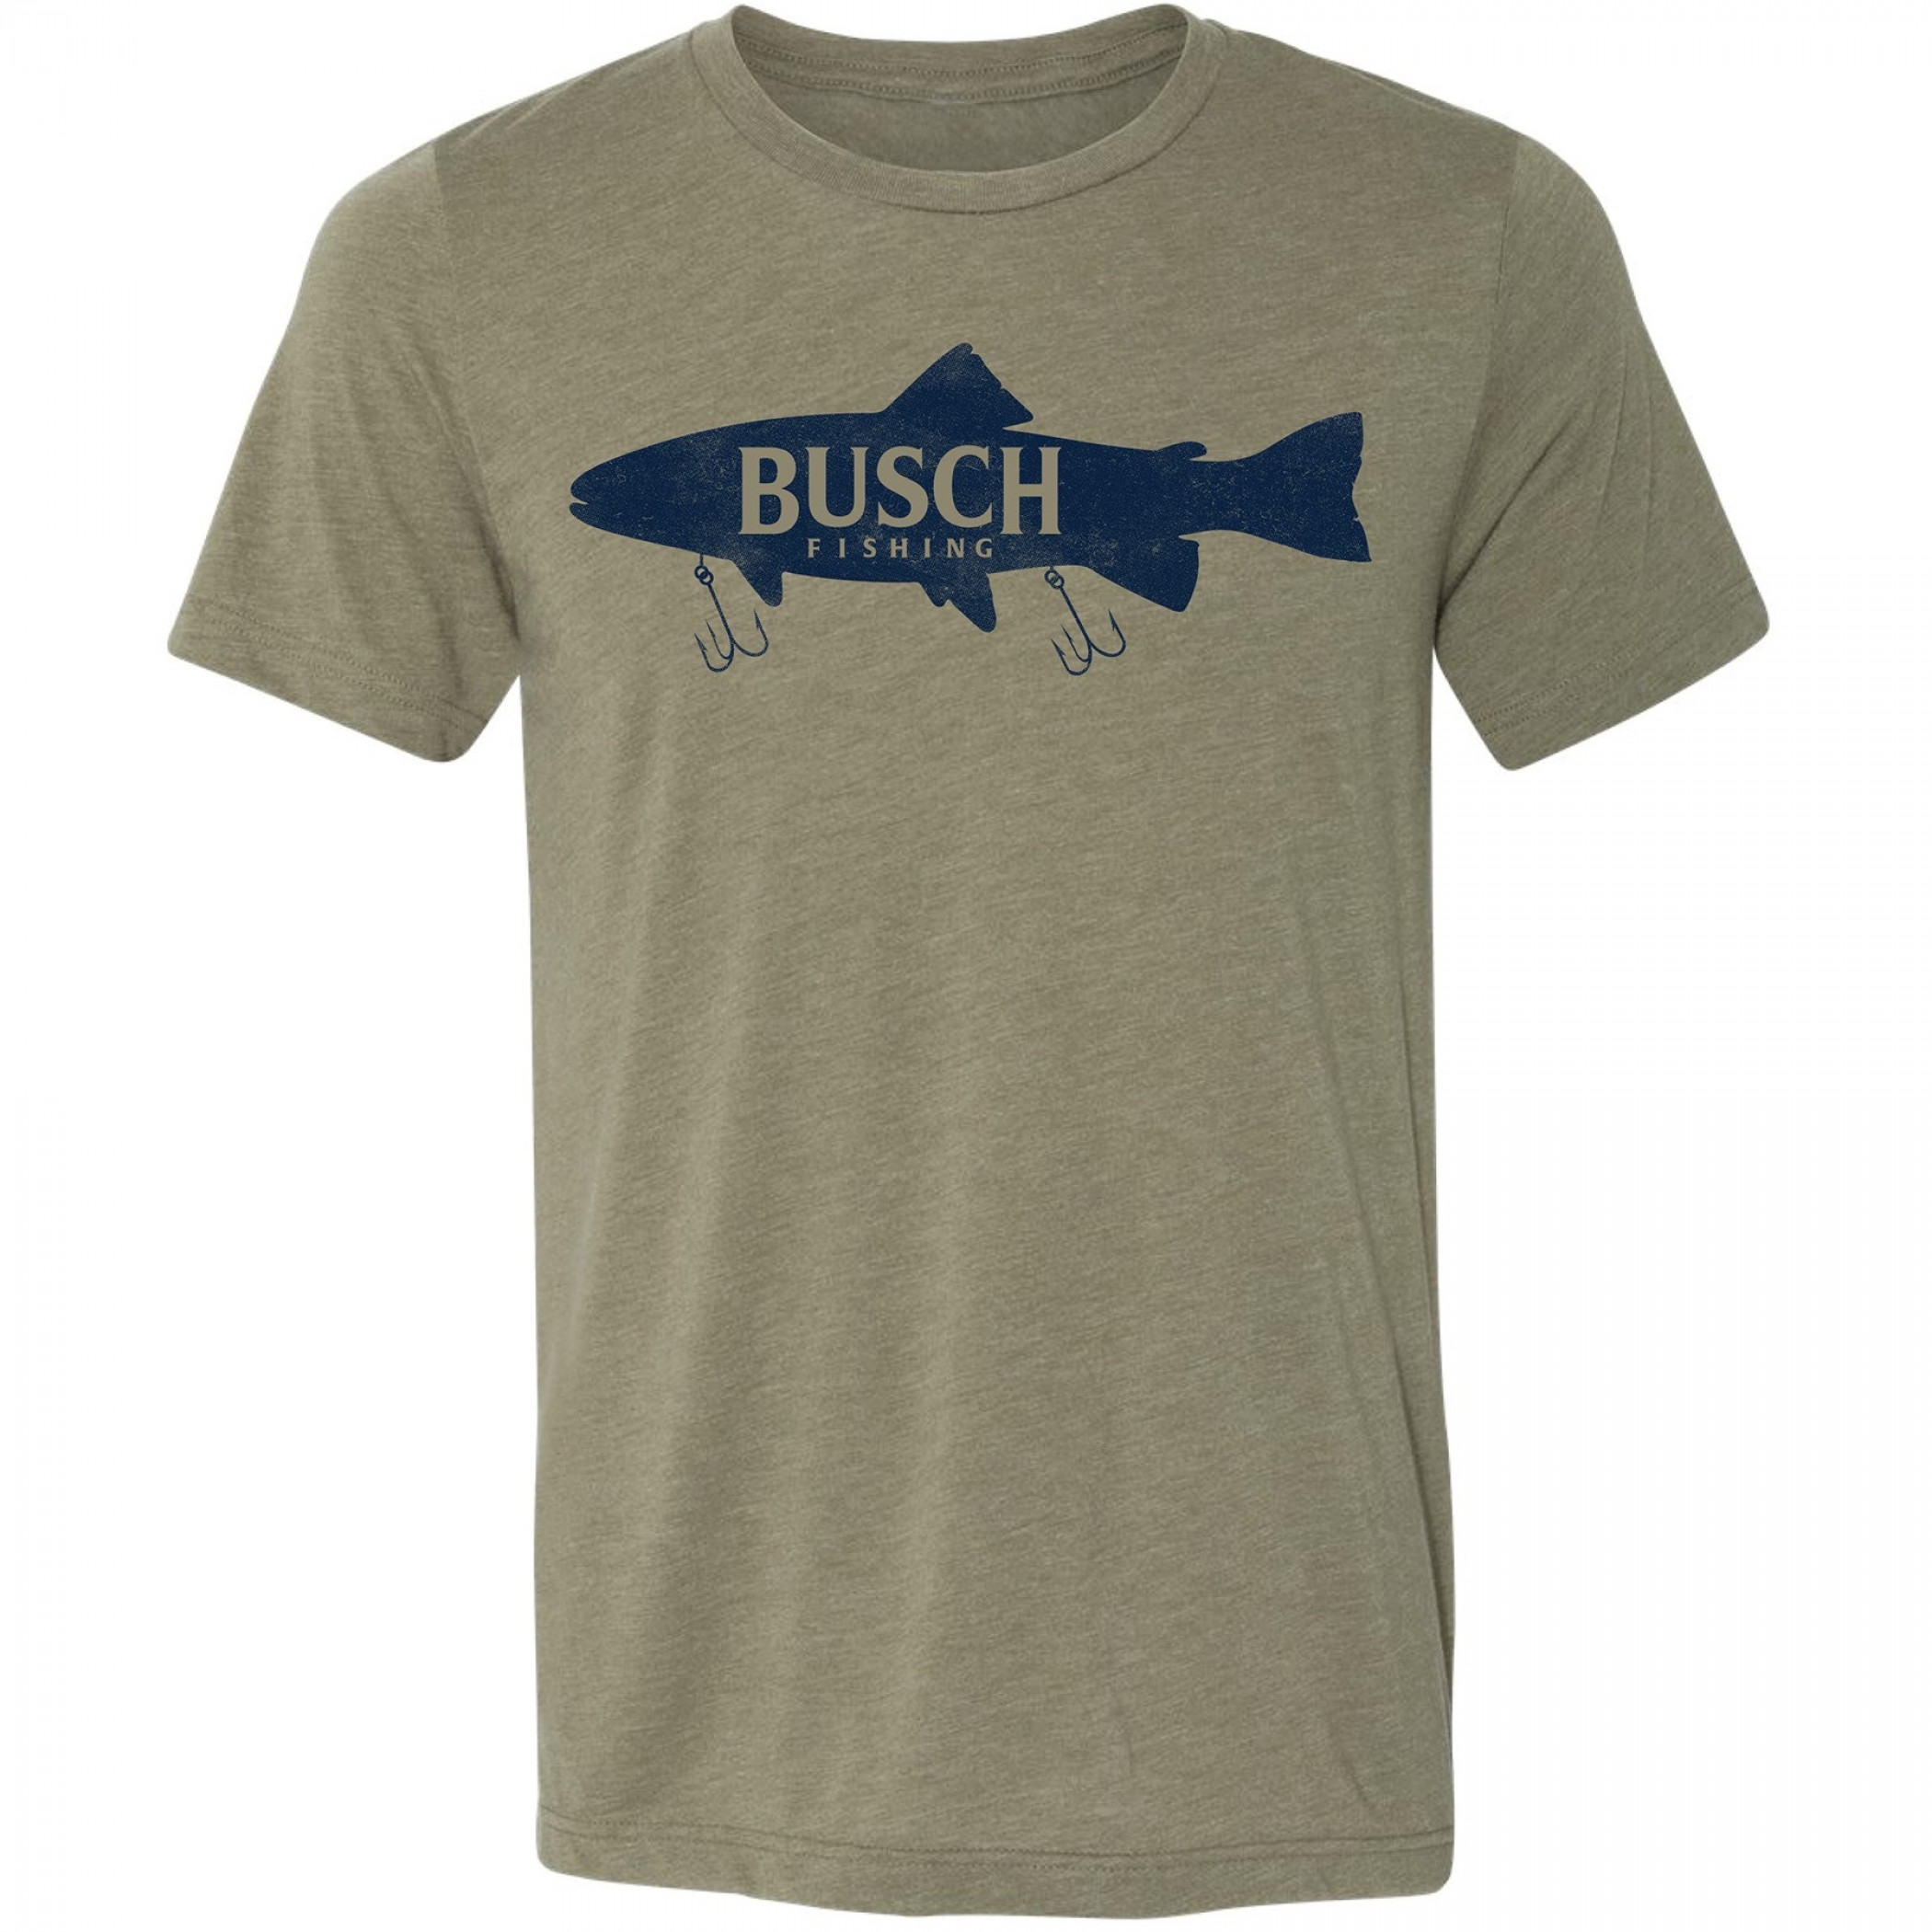 Busch Fishing Lure T-Shirt